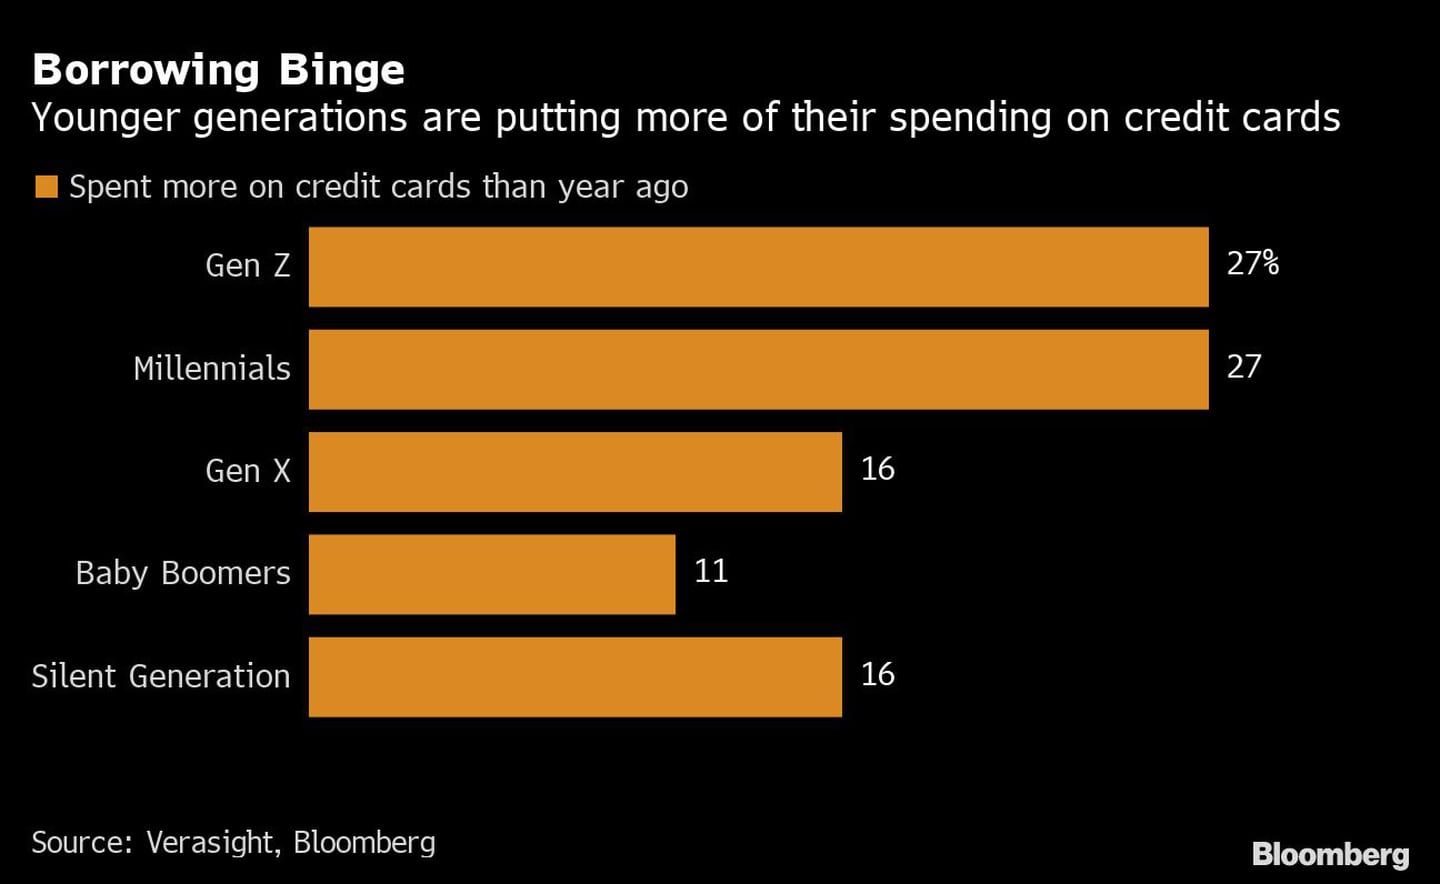 La compulsividad de los préstamos
Las generaciones más jóvenes gastan más en tarjetas de crédito
Naranja: Gastan más en tarjetas de crédito que hace un año
De arriba a abajo: Generación Z, Millenials, Generación X, Baby Boomers, Generación Silenciosadfd